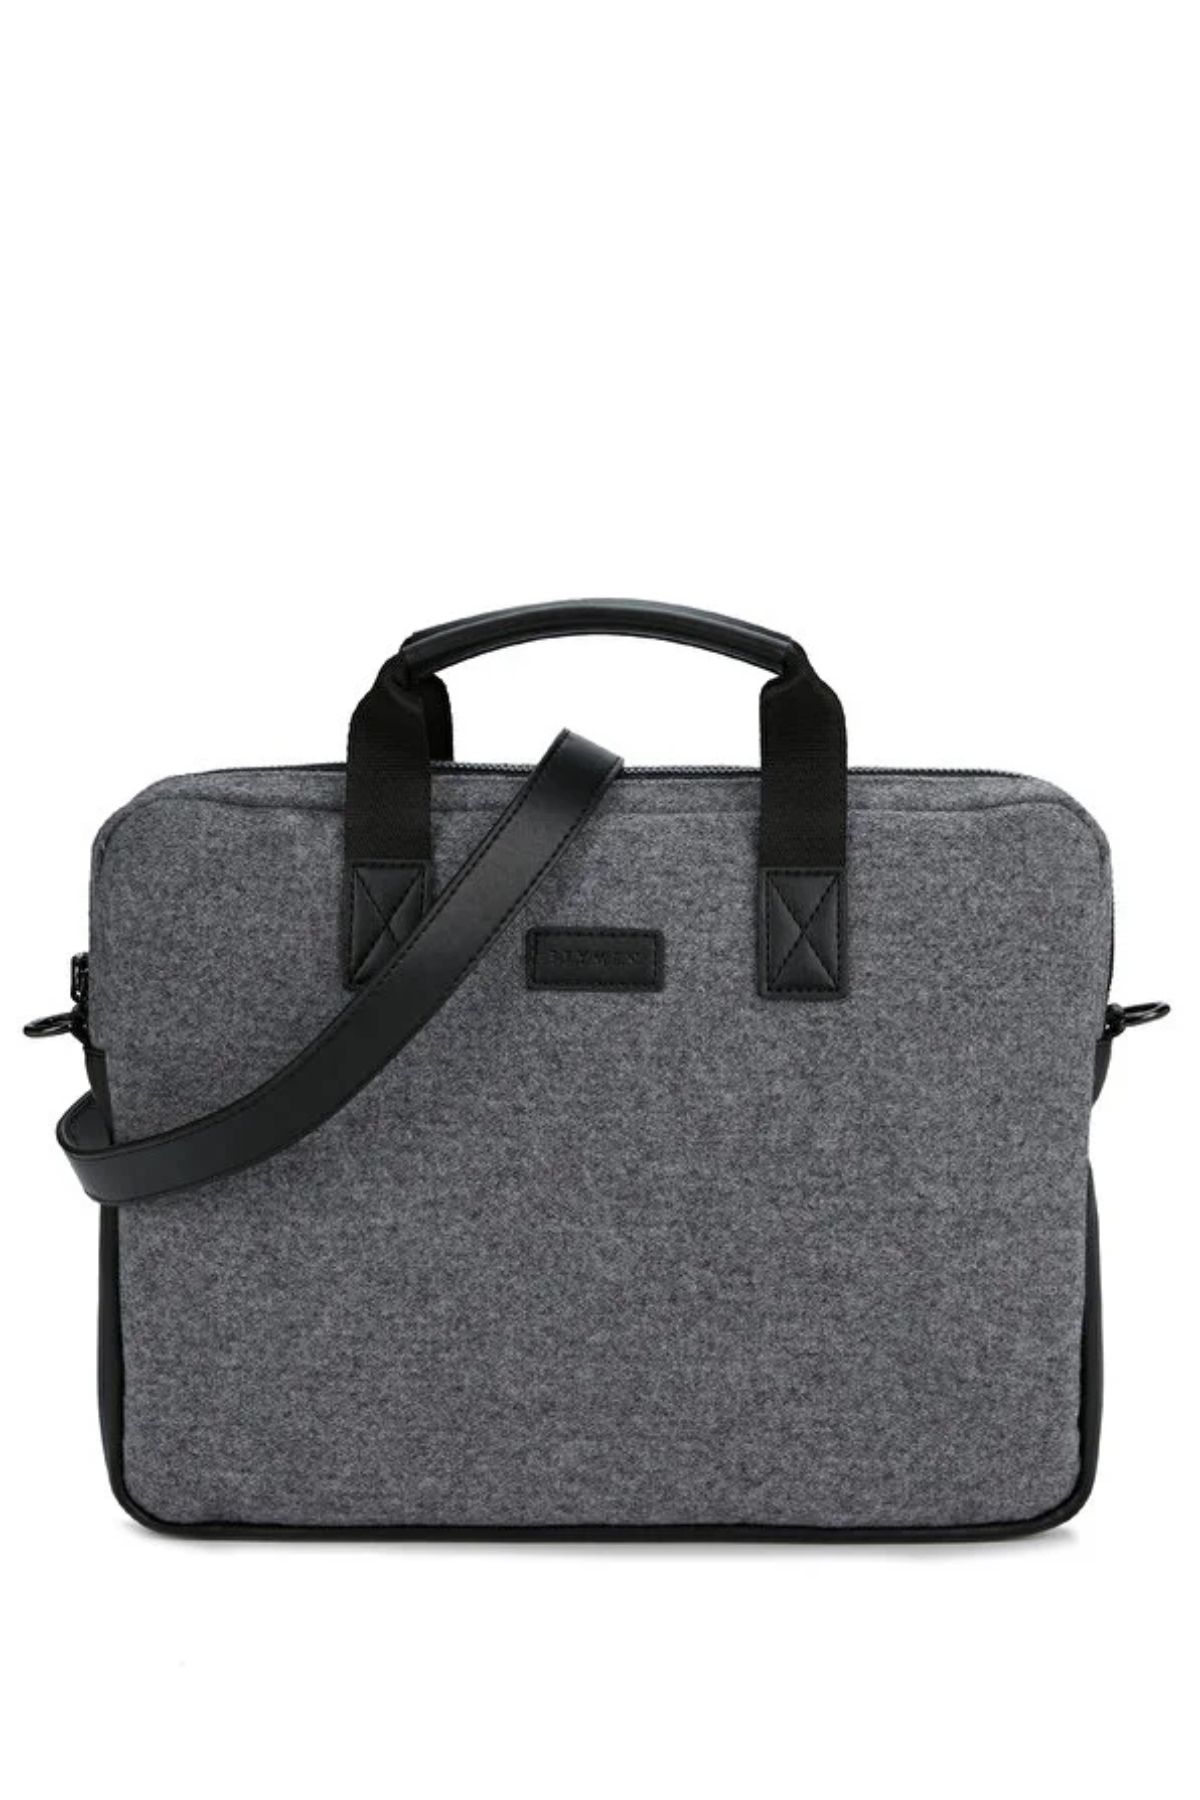 Beymen Gri 14 Inch Erkek Laptop Çantası - Evrak çantası